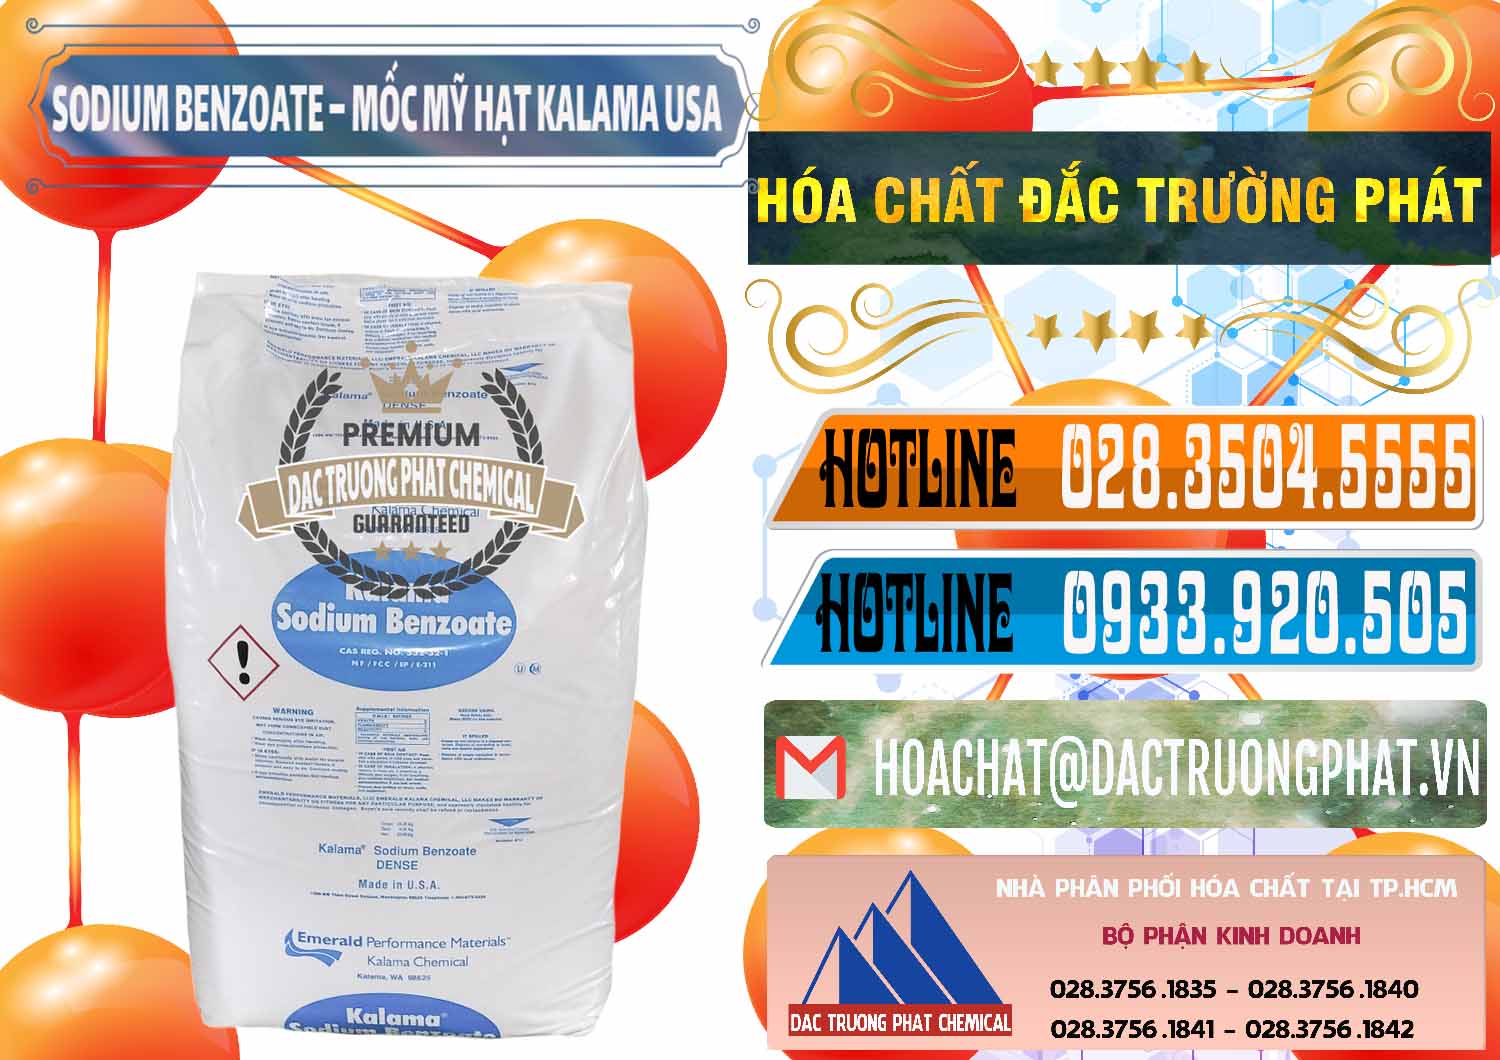 Công ty bán - cung cấp Sodium Benzoate - Mốc Hạt Kalama Food Grade Mỹ Usa - 0137 - Công ty chuyên bán ( cung cấp ) hóa chất tại TP.HCM - stmp.net